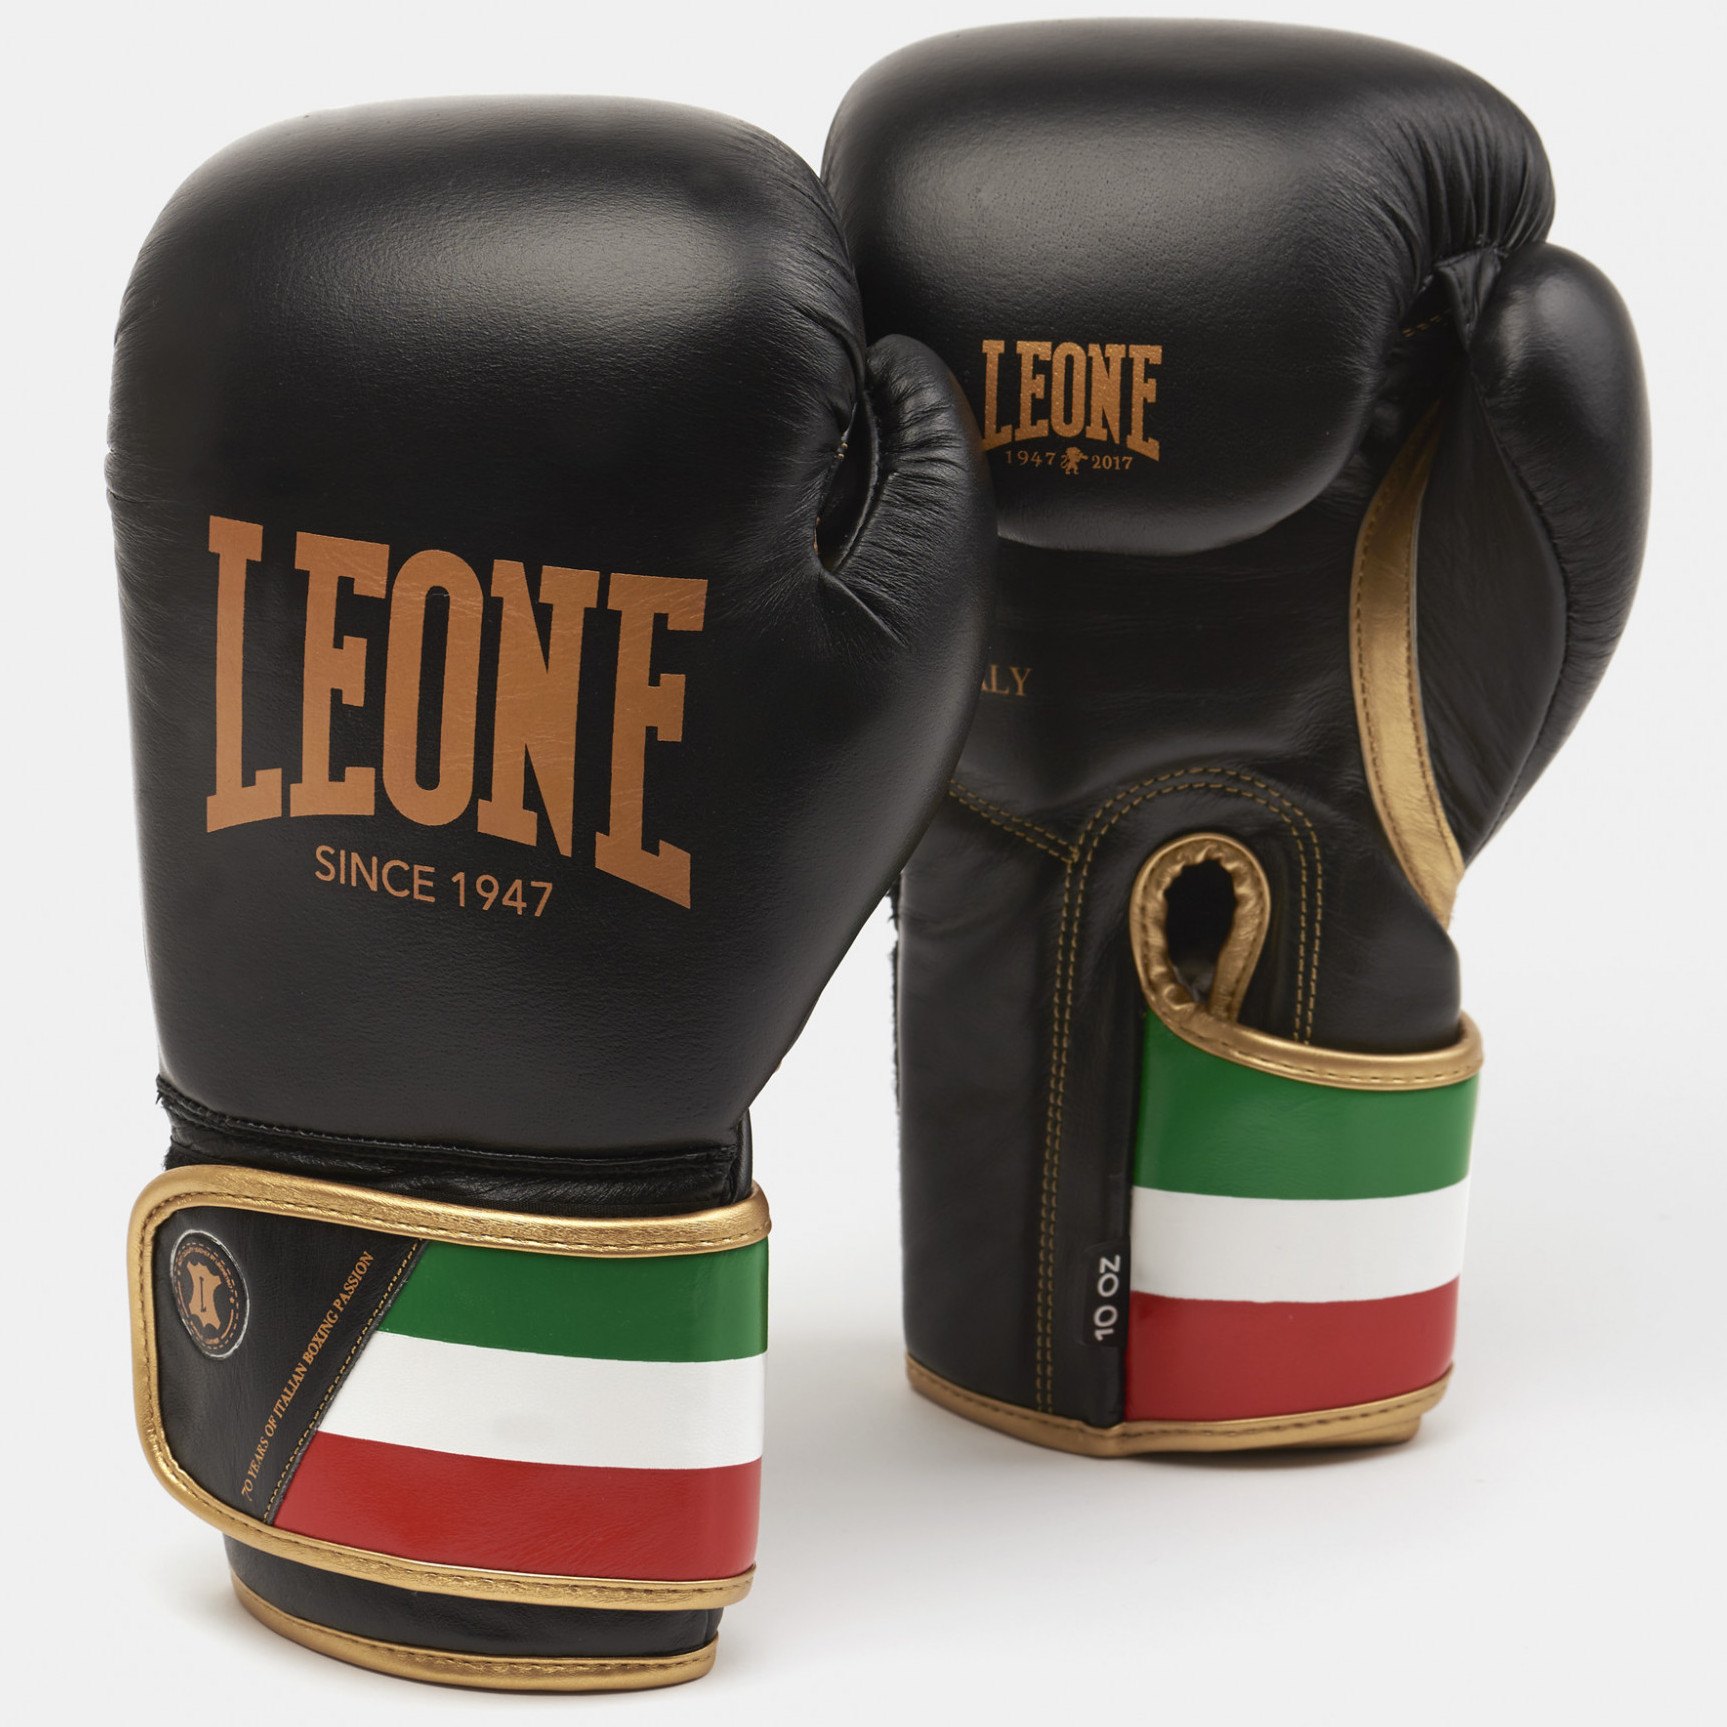  Боксерские перчатки LEONE ITALY 47 черные 